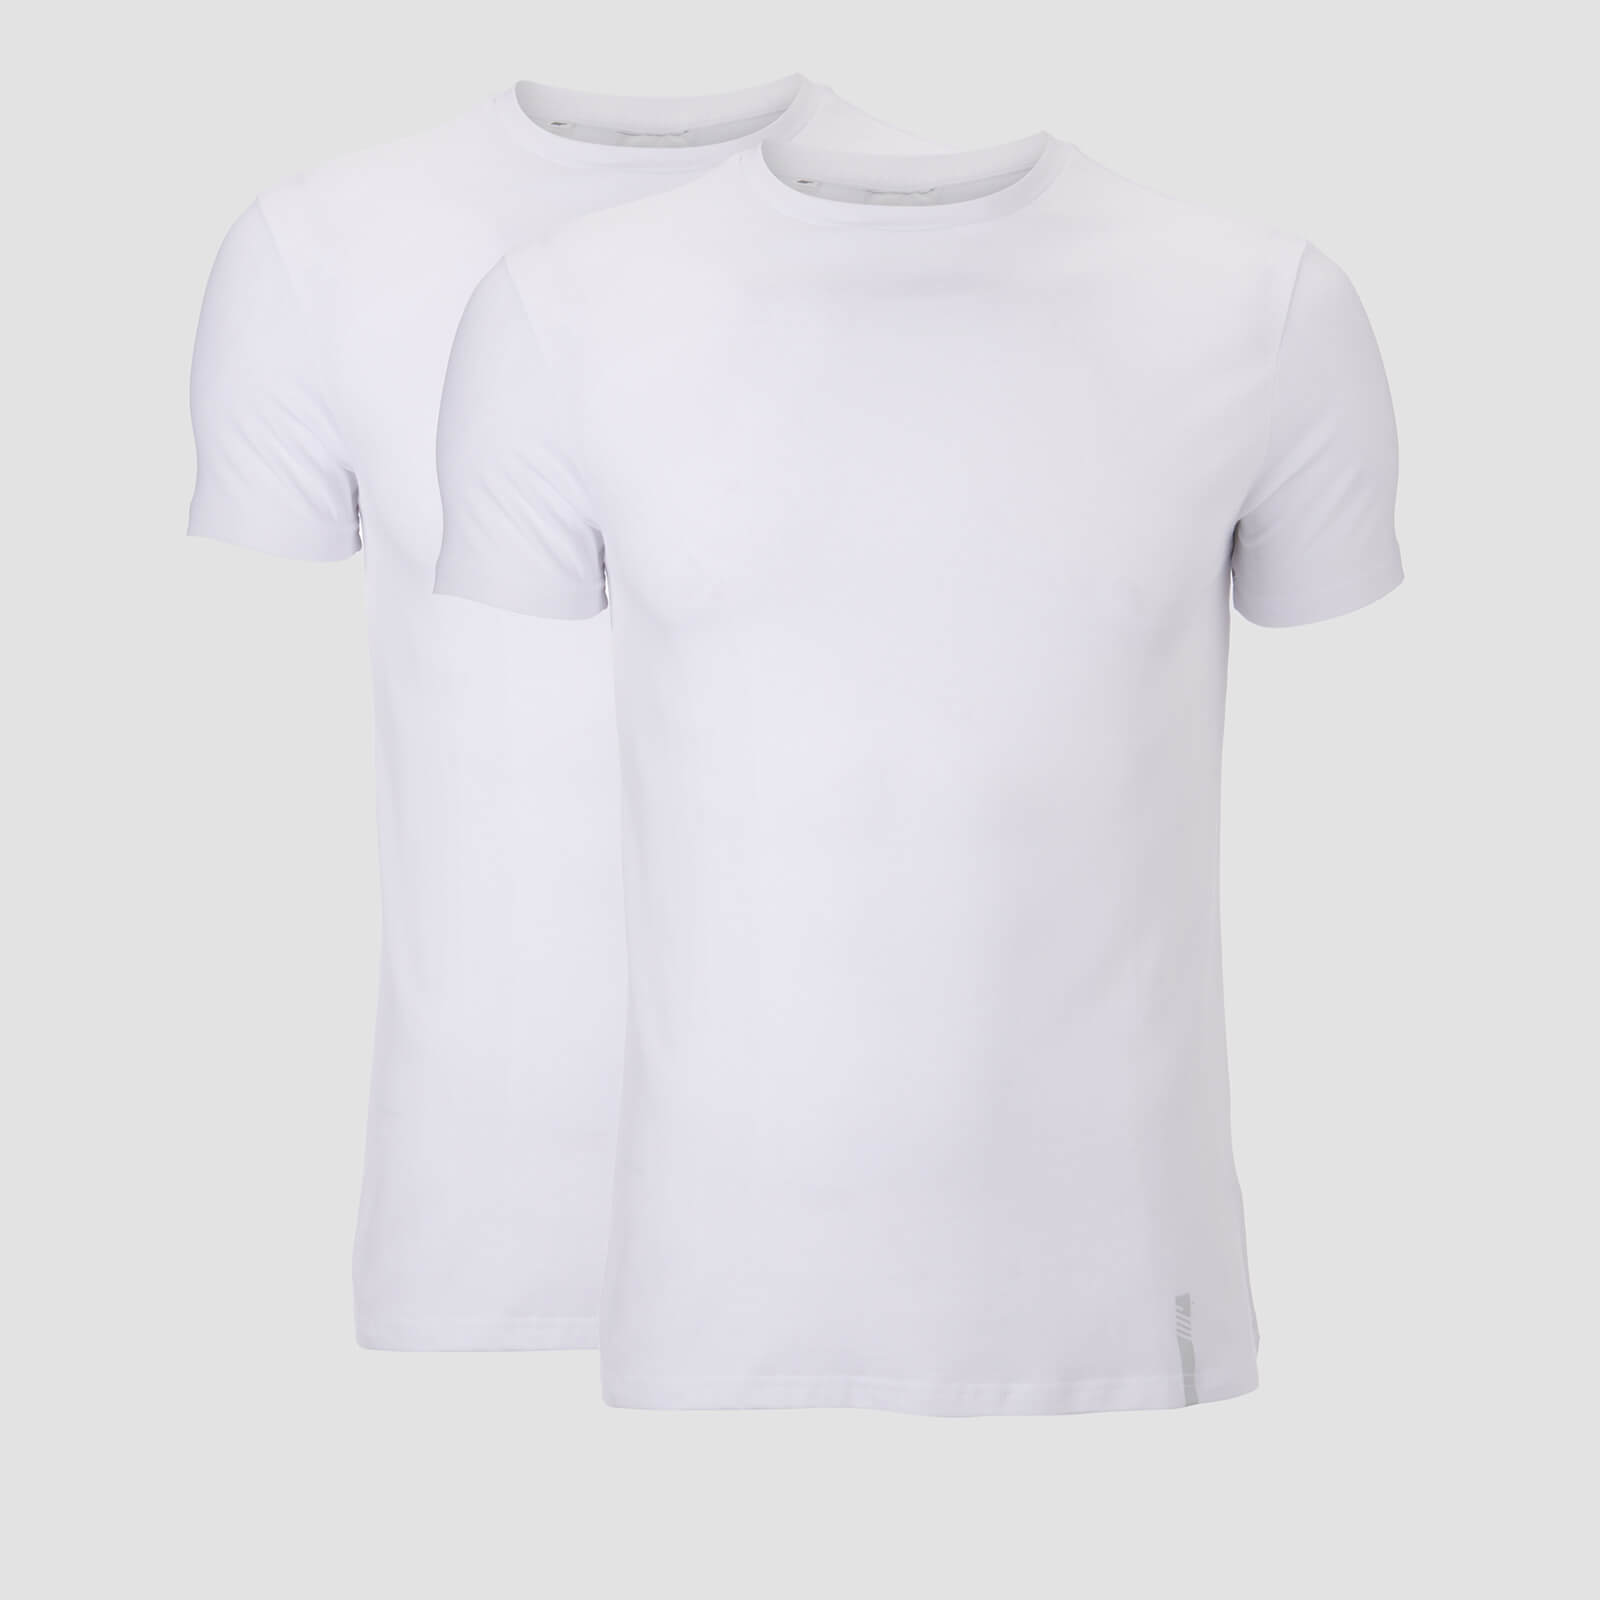 Mp T-shirt Luxe Classic (confezione da 2) - Bianco/Bianco - S